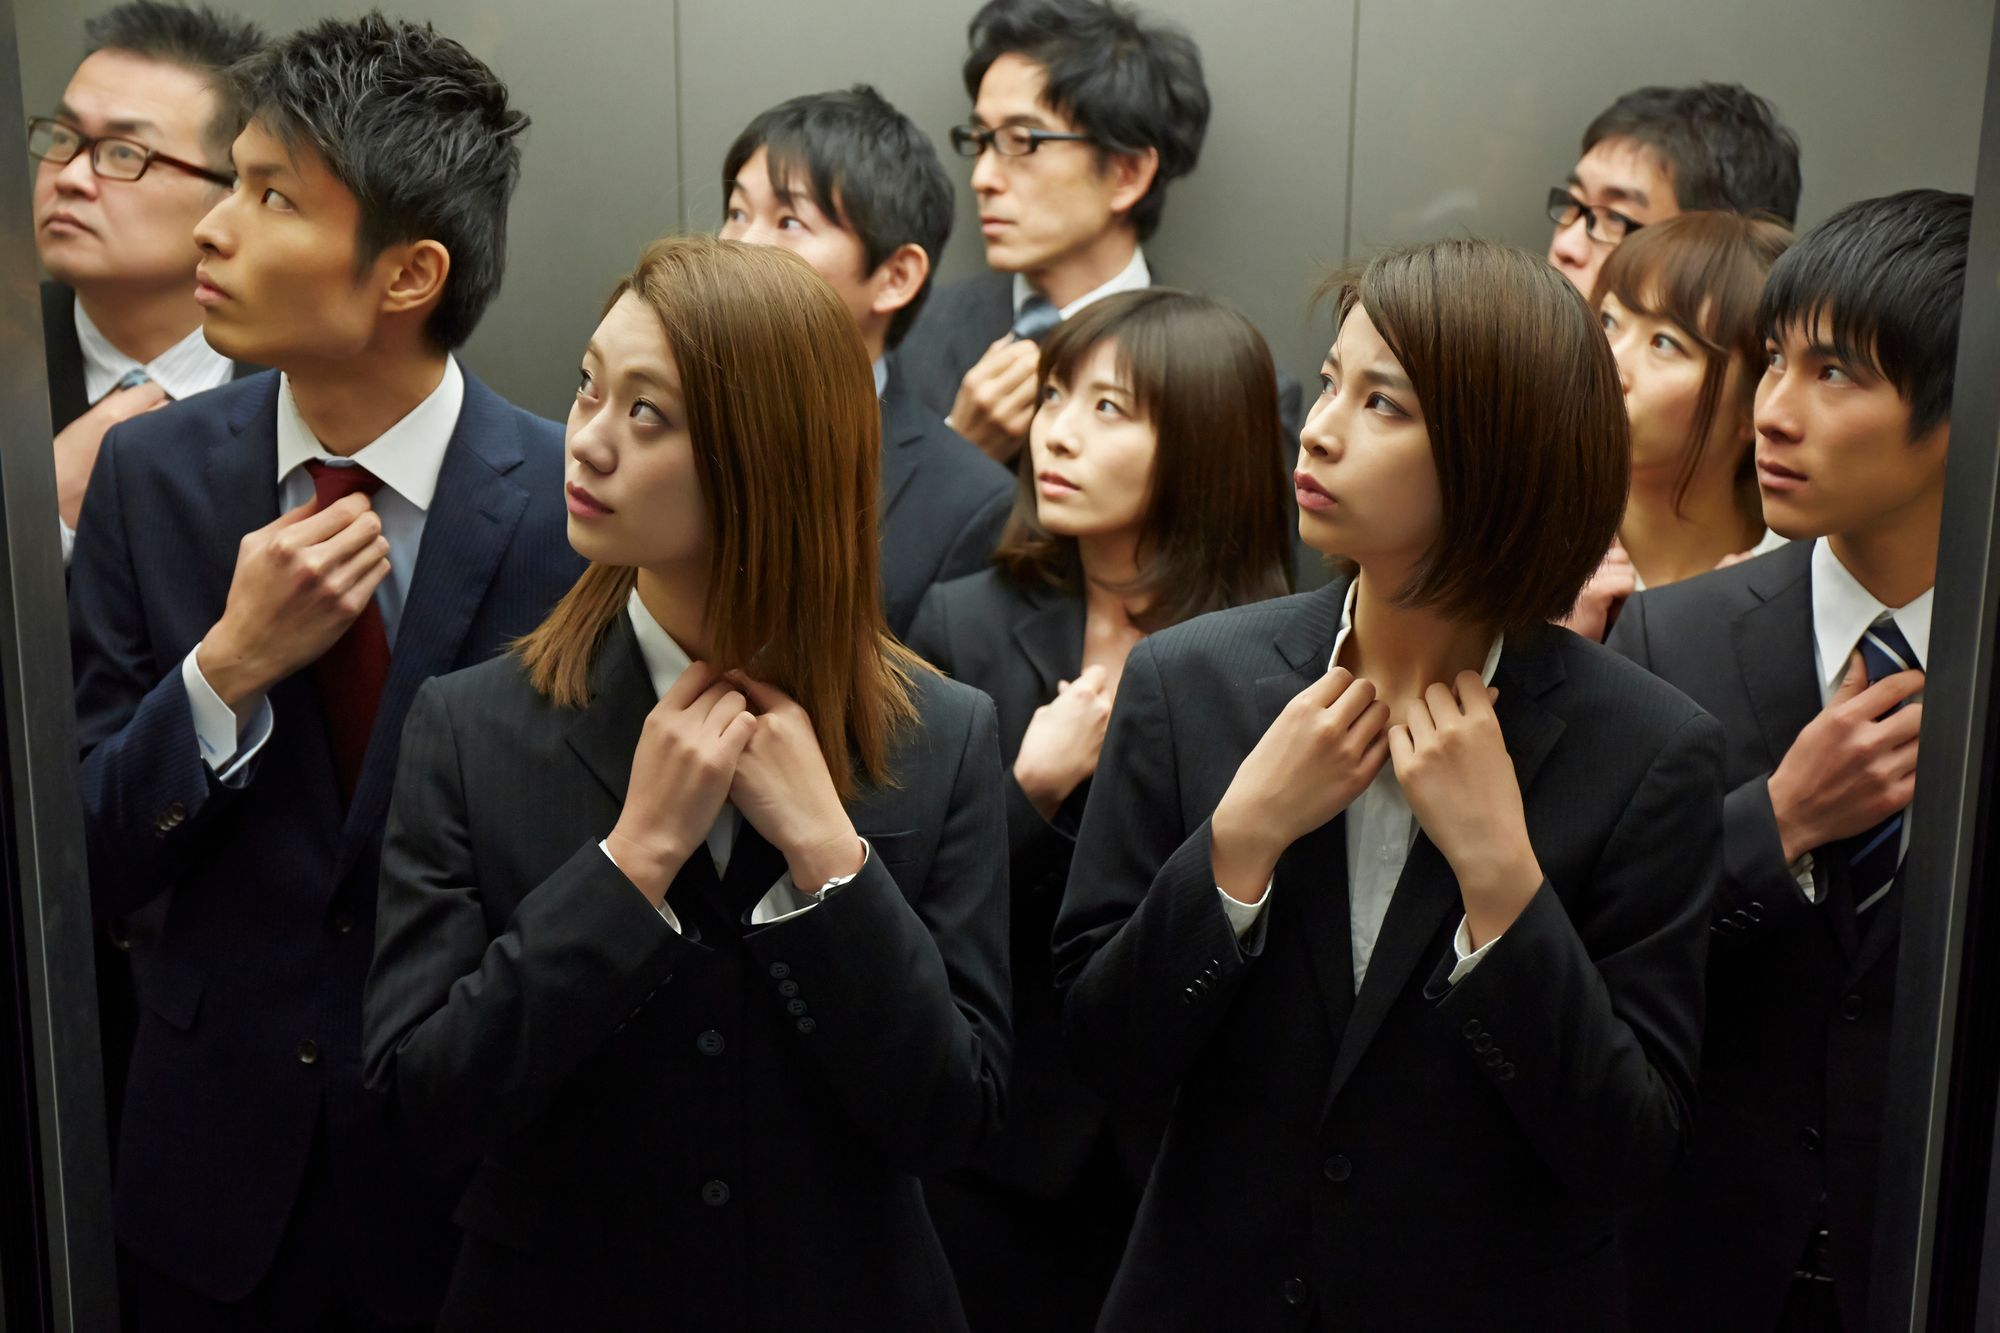 ブリヂストンが「日本企業に合う」人事制度を運用。意思決定を早める秘訣とは